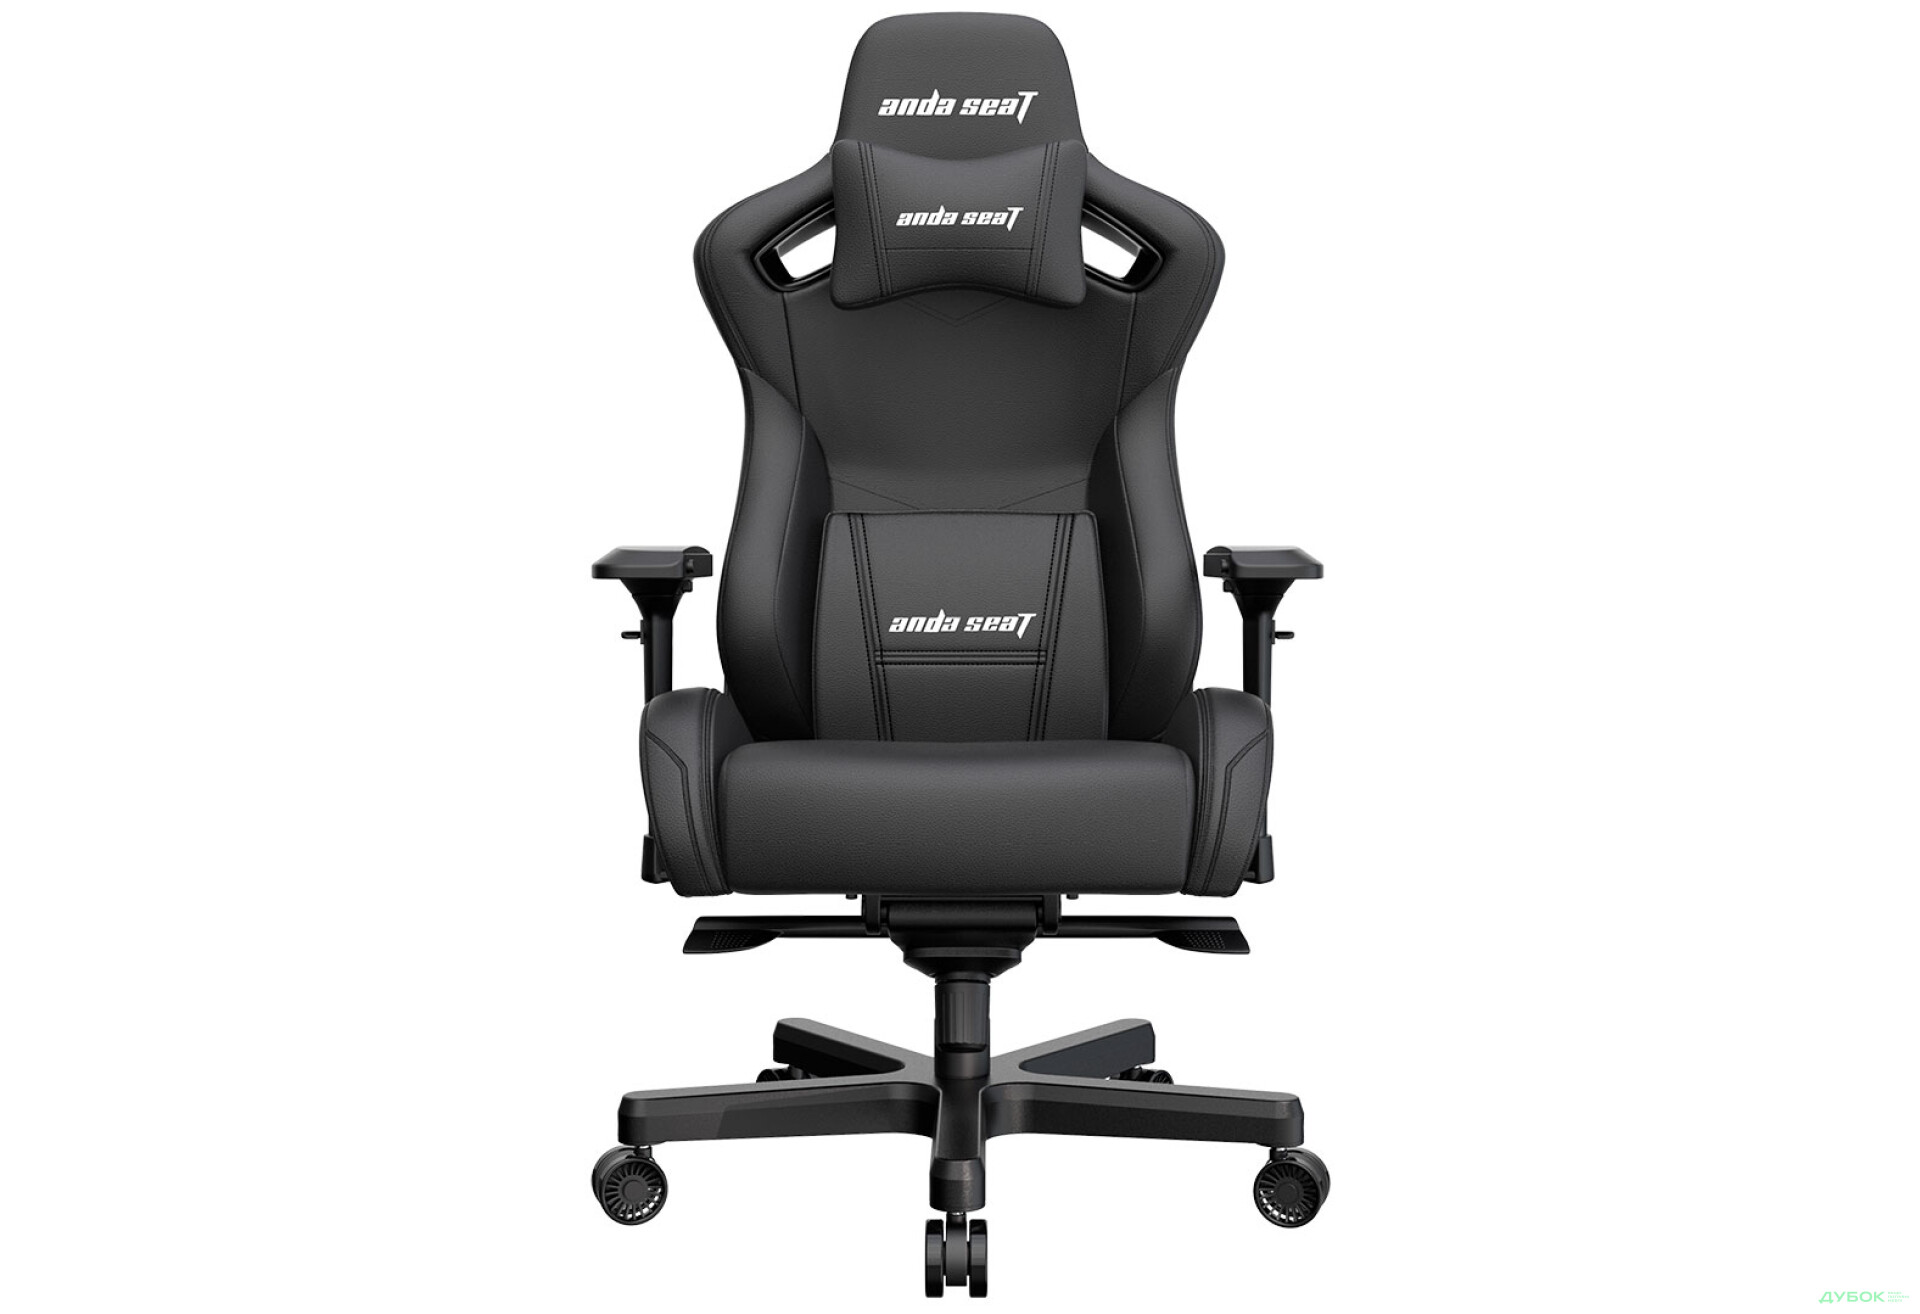 Фото 1 - Компьютерное кресло Anda Seat Kaiser 2 61x57x143 см игровое, черное